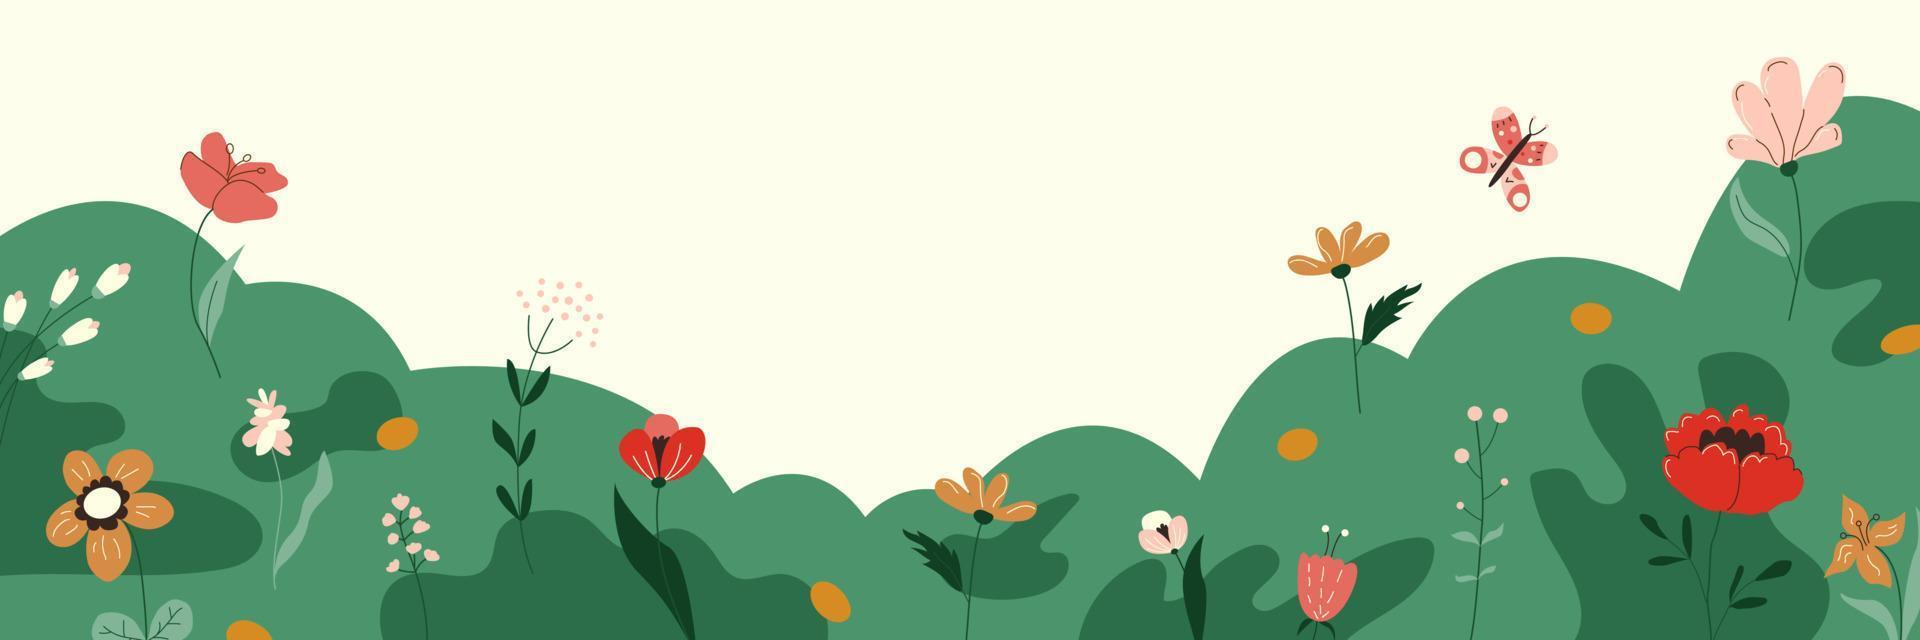 fond de nature avec des fleurs sauvages, des herbes, des plantes, des papillons. jolie bannière horizontale fleurie florale. bordure de champ de printemps décorative. illustration vectorielle plane de dessin animé vecteur